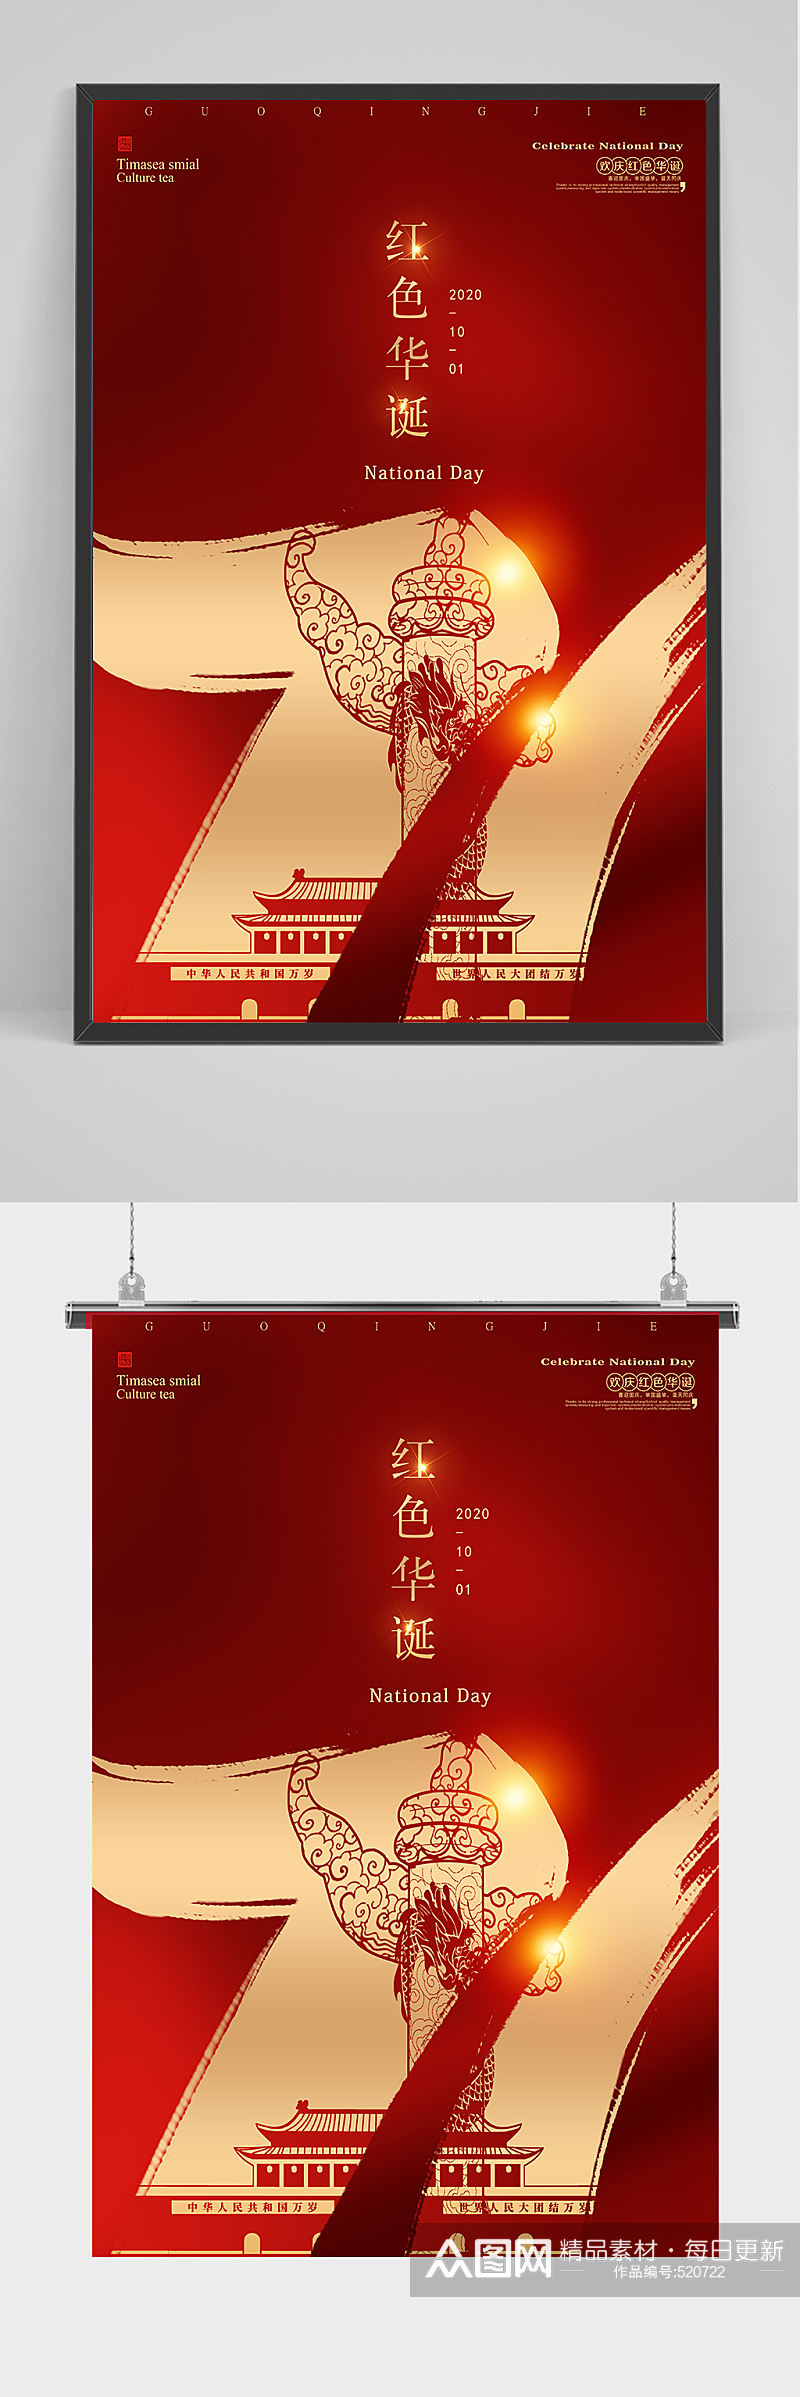 红金庆祝国庆71周年海报设计素材